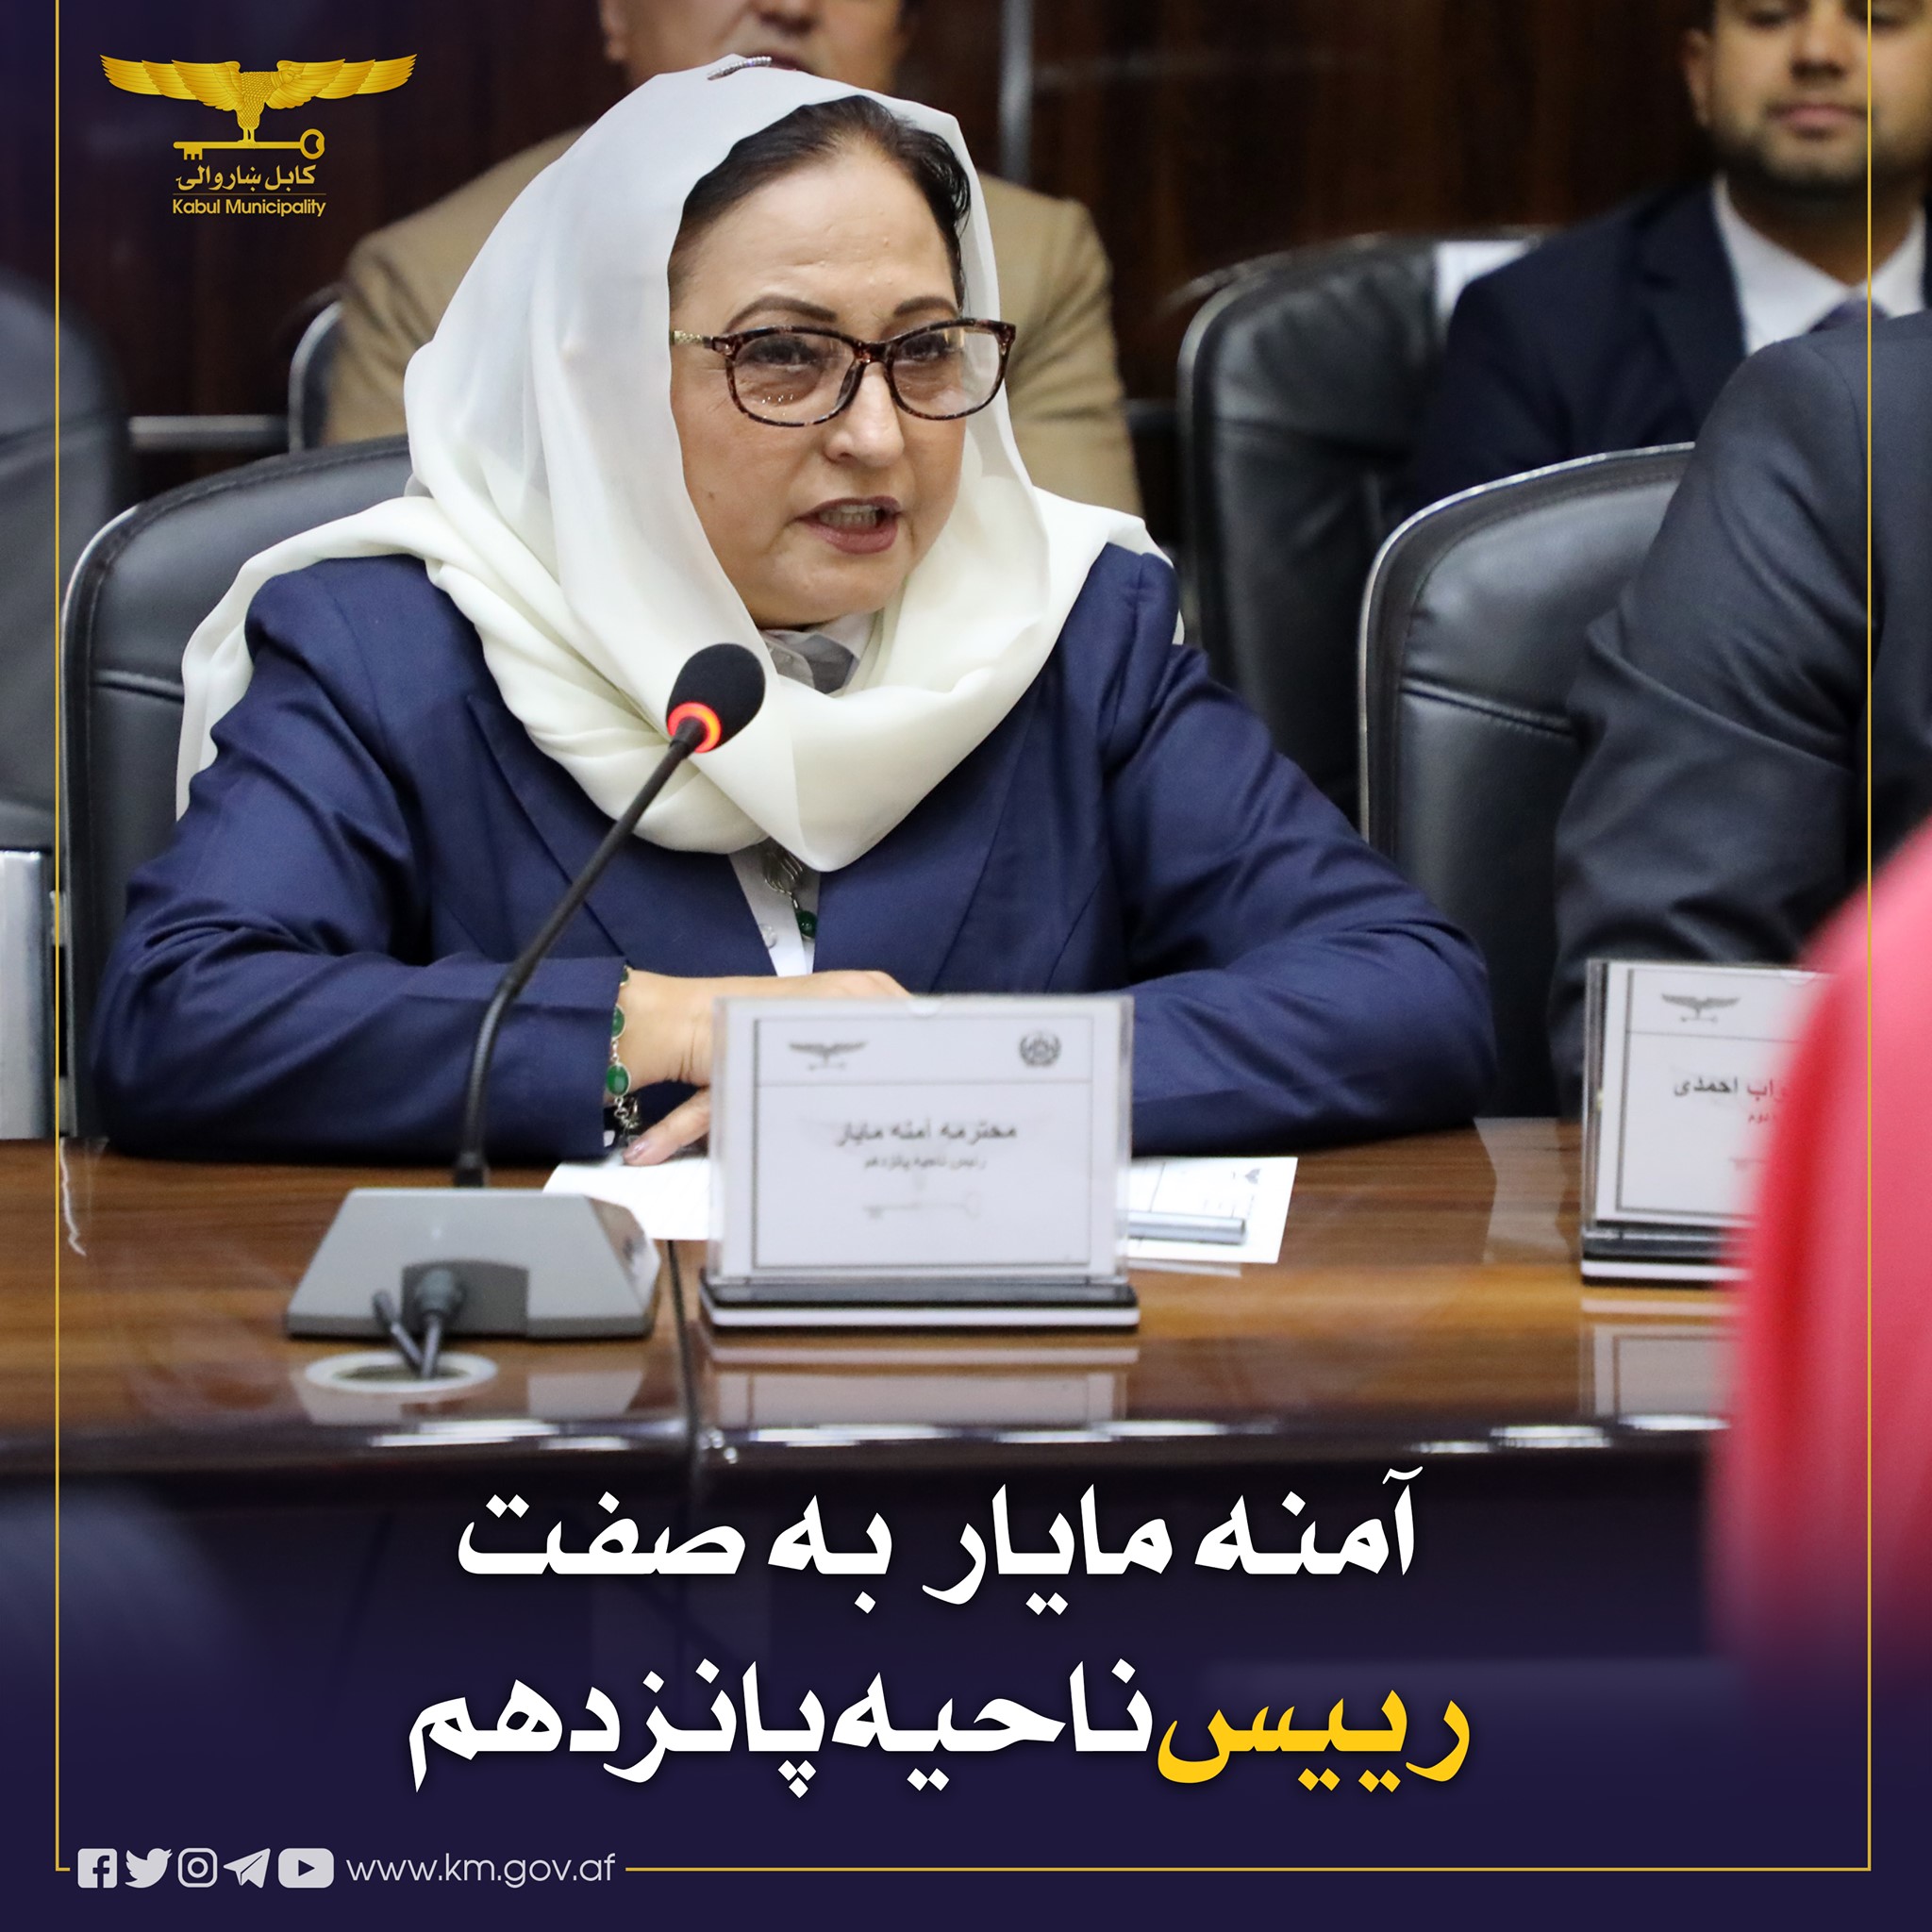 نخستین  زن  به سمت  ریاست یکی از ناحیه های کابل  آغاز  به کار کرد